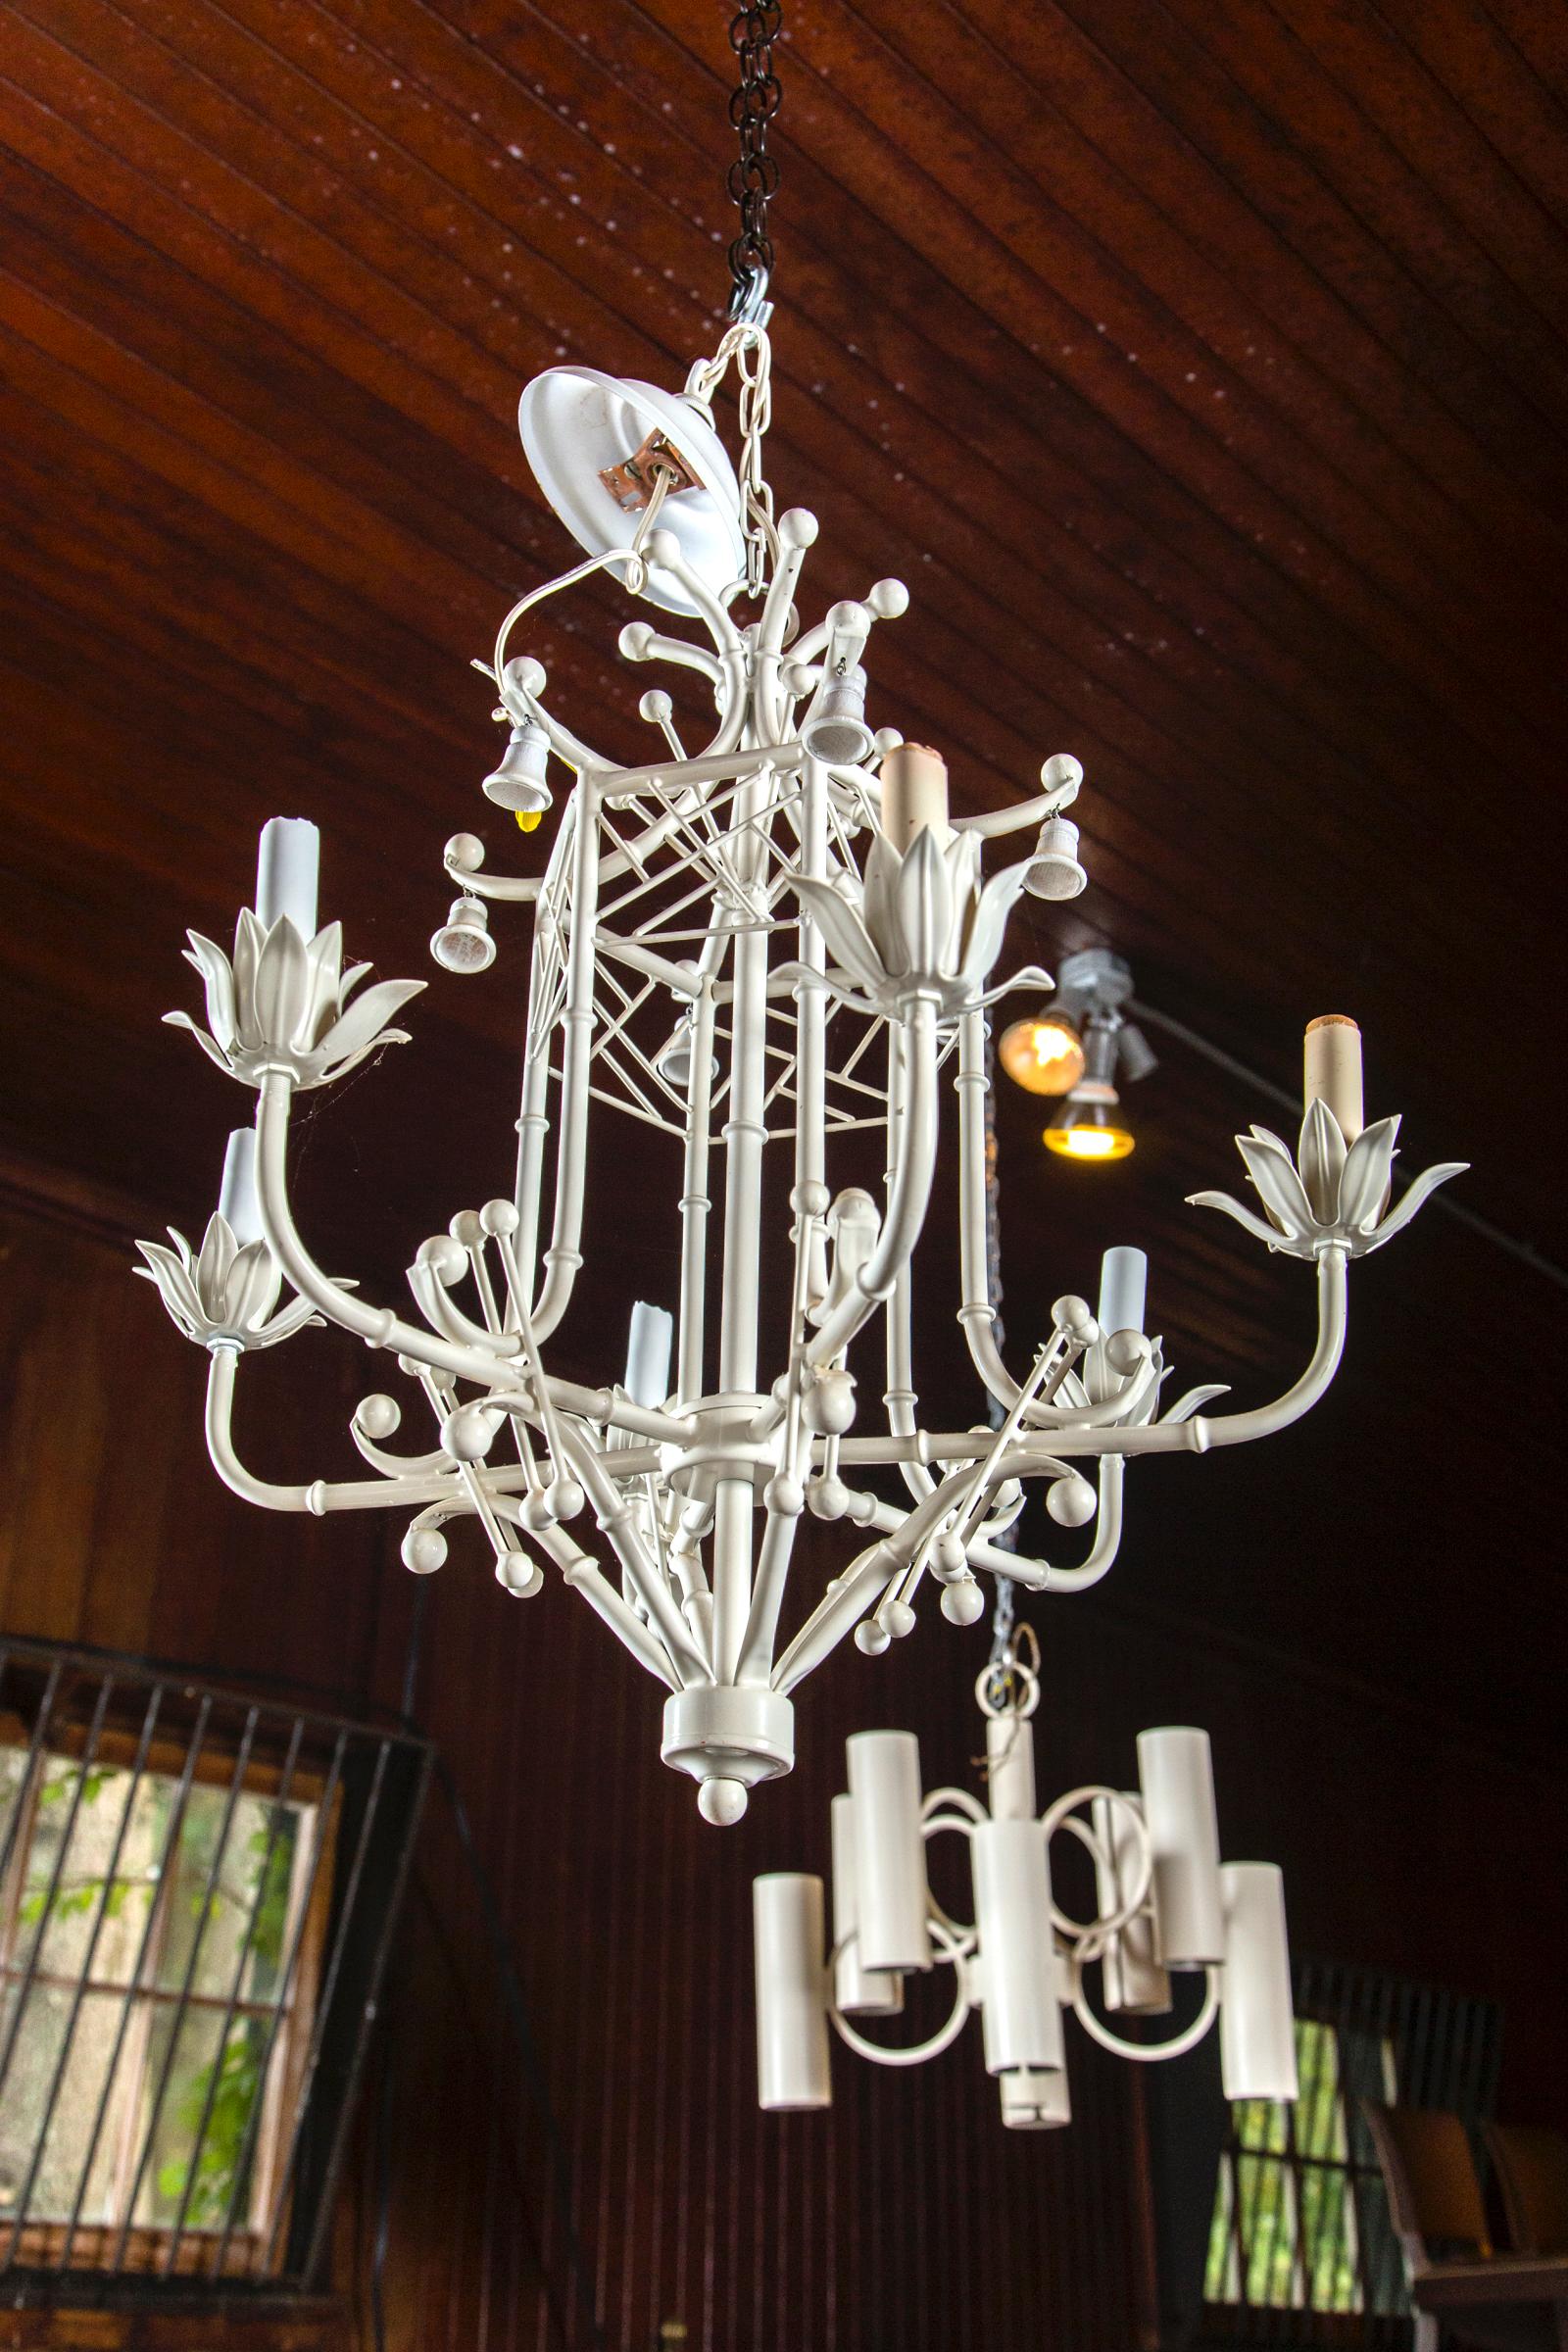 painted metal chandelier